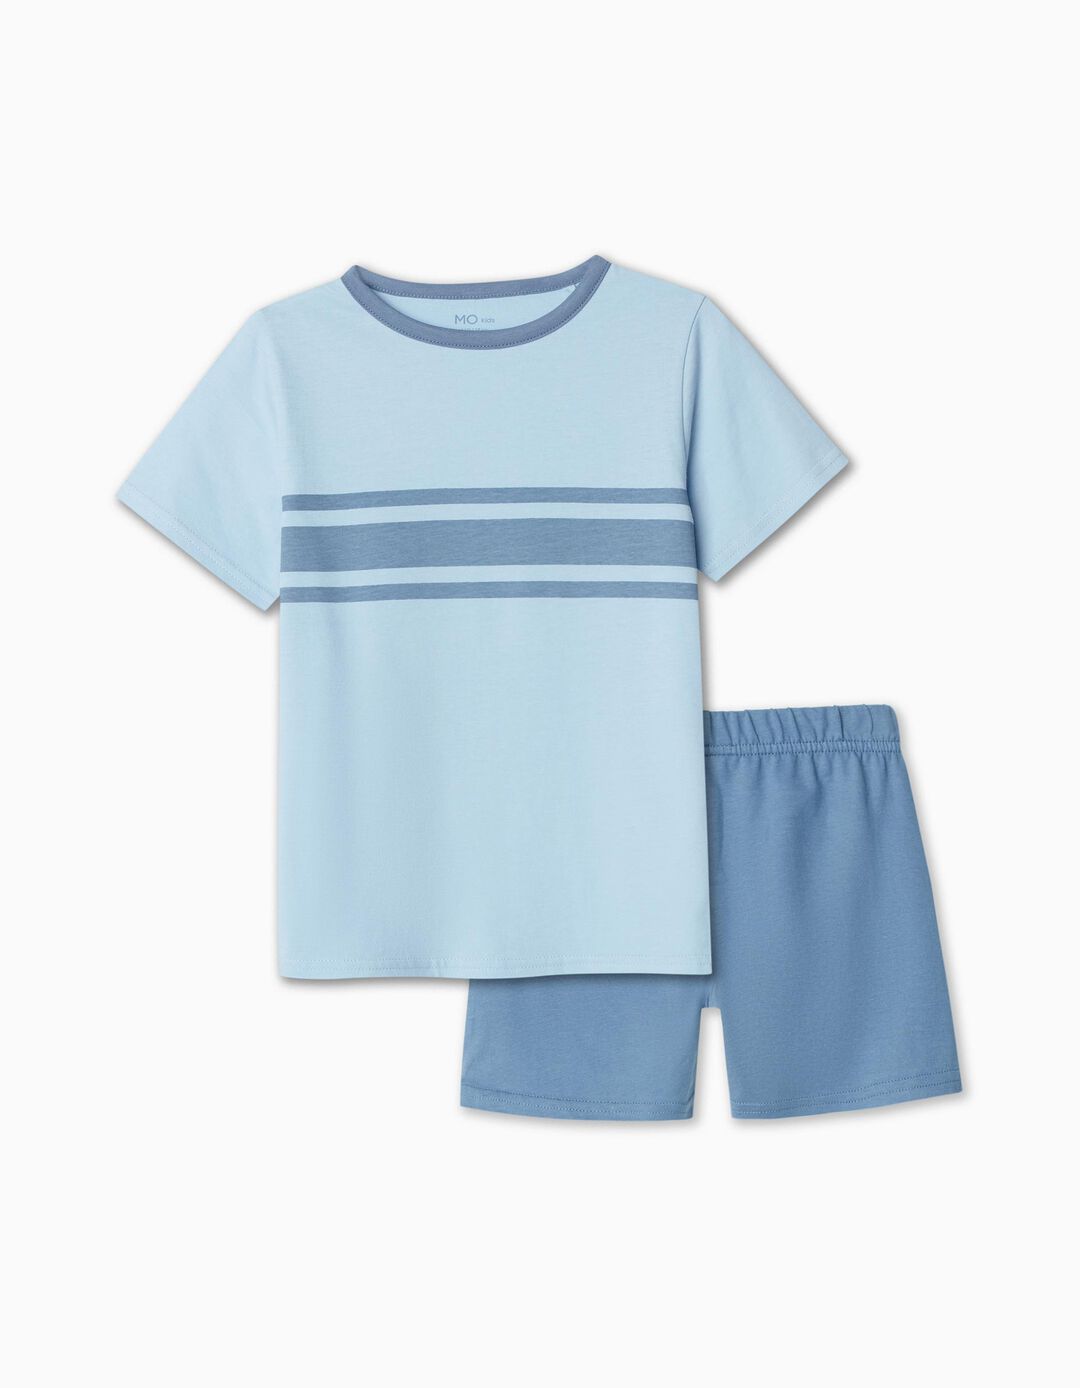 Pijama, Menino, Azul Claro